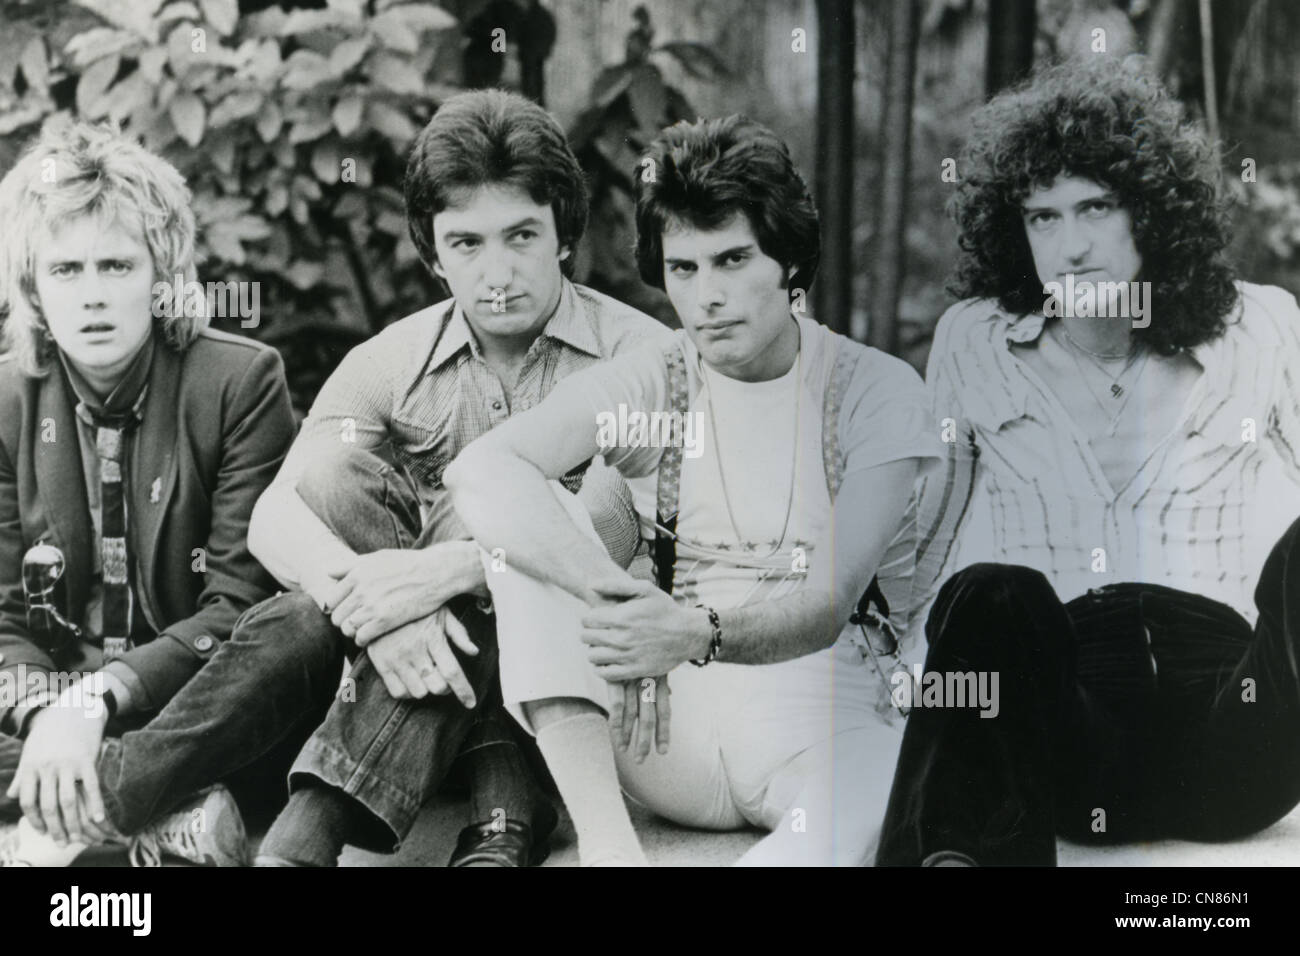 Promotion de la reine photo de groupe rock britannique en 1978, de gauche Roger Taylor, John Deacon, Freddie Mercury, Brian May Banque D'Images